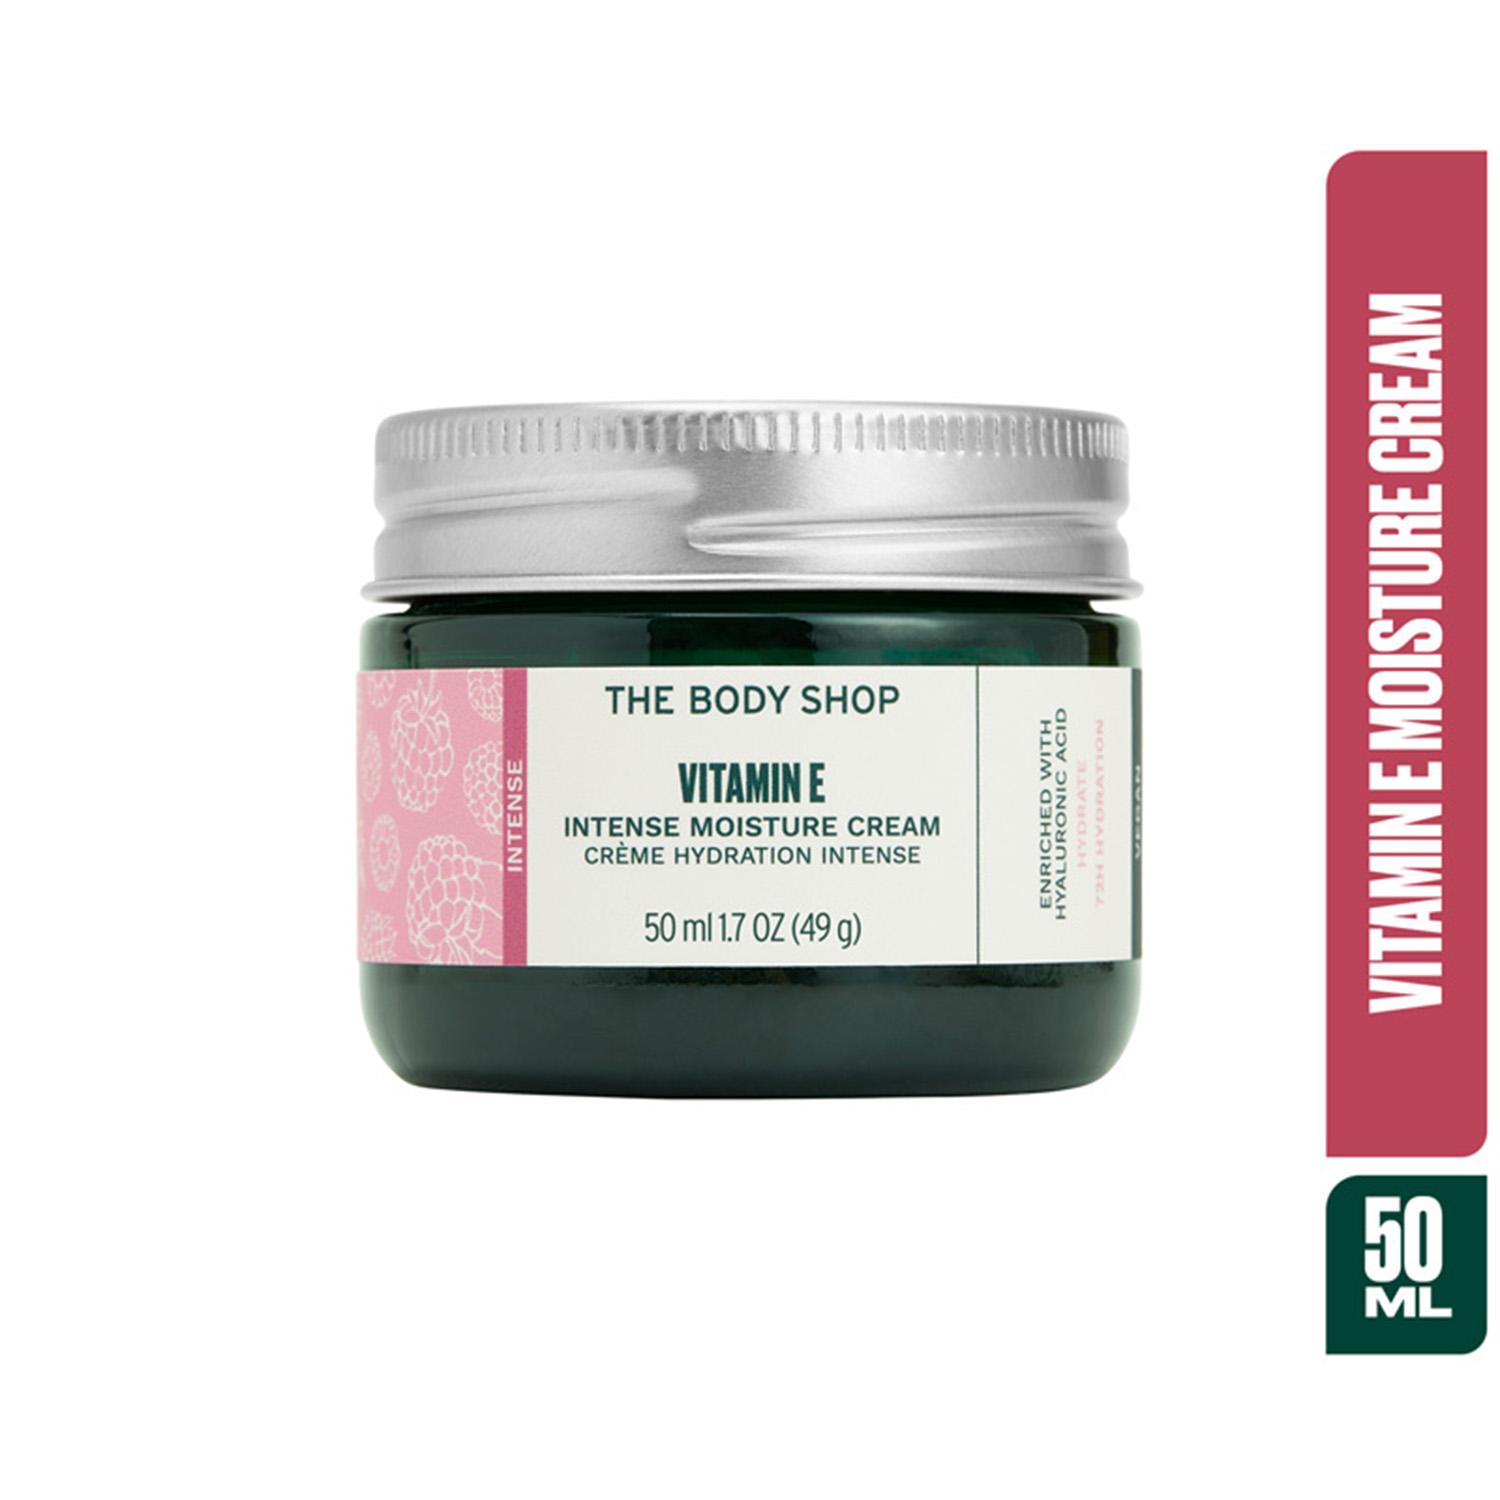 The Body Shop | The Body Shop Vitamin E Intense Moisture Cream (50ml)